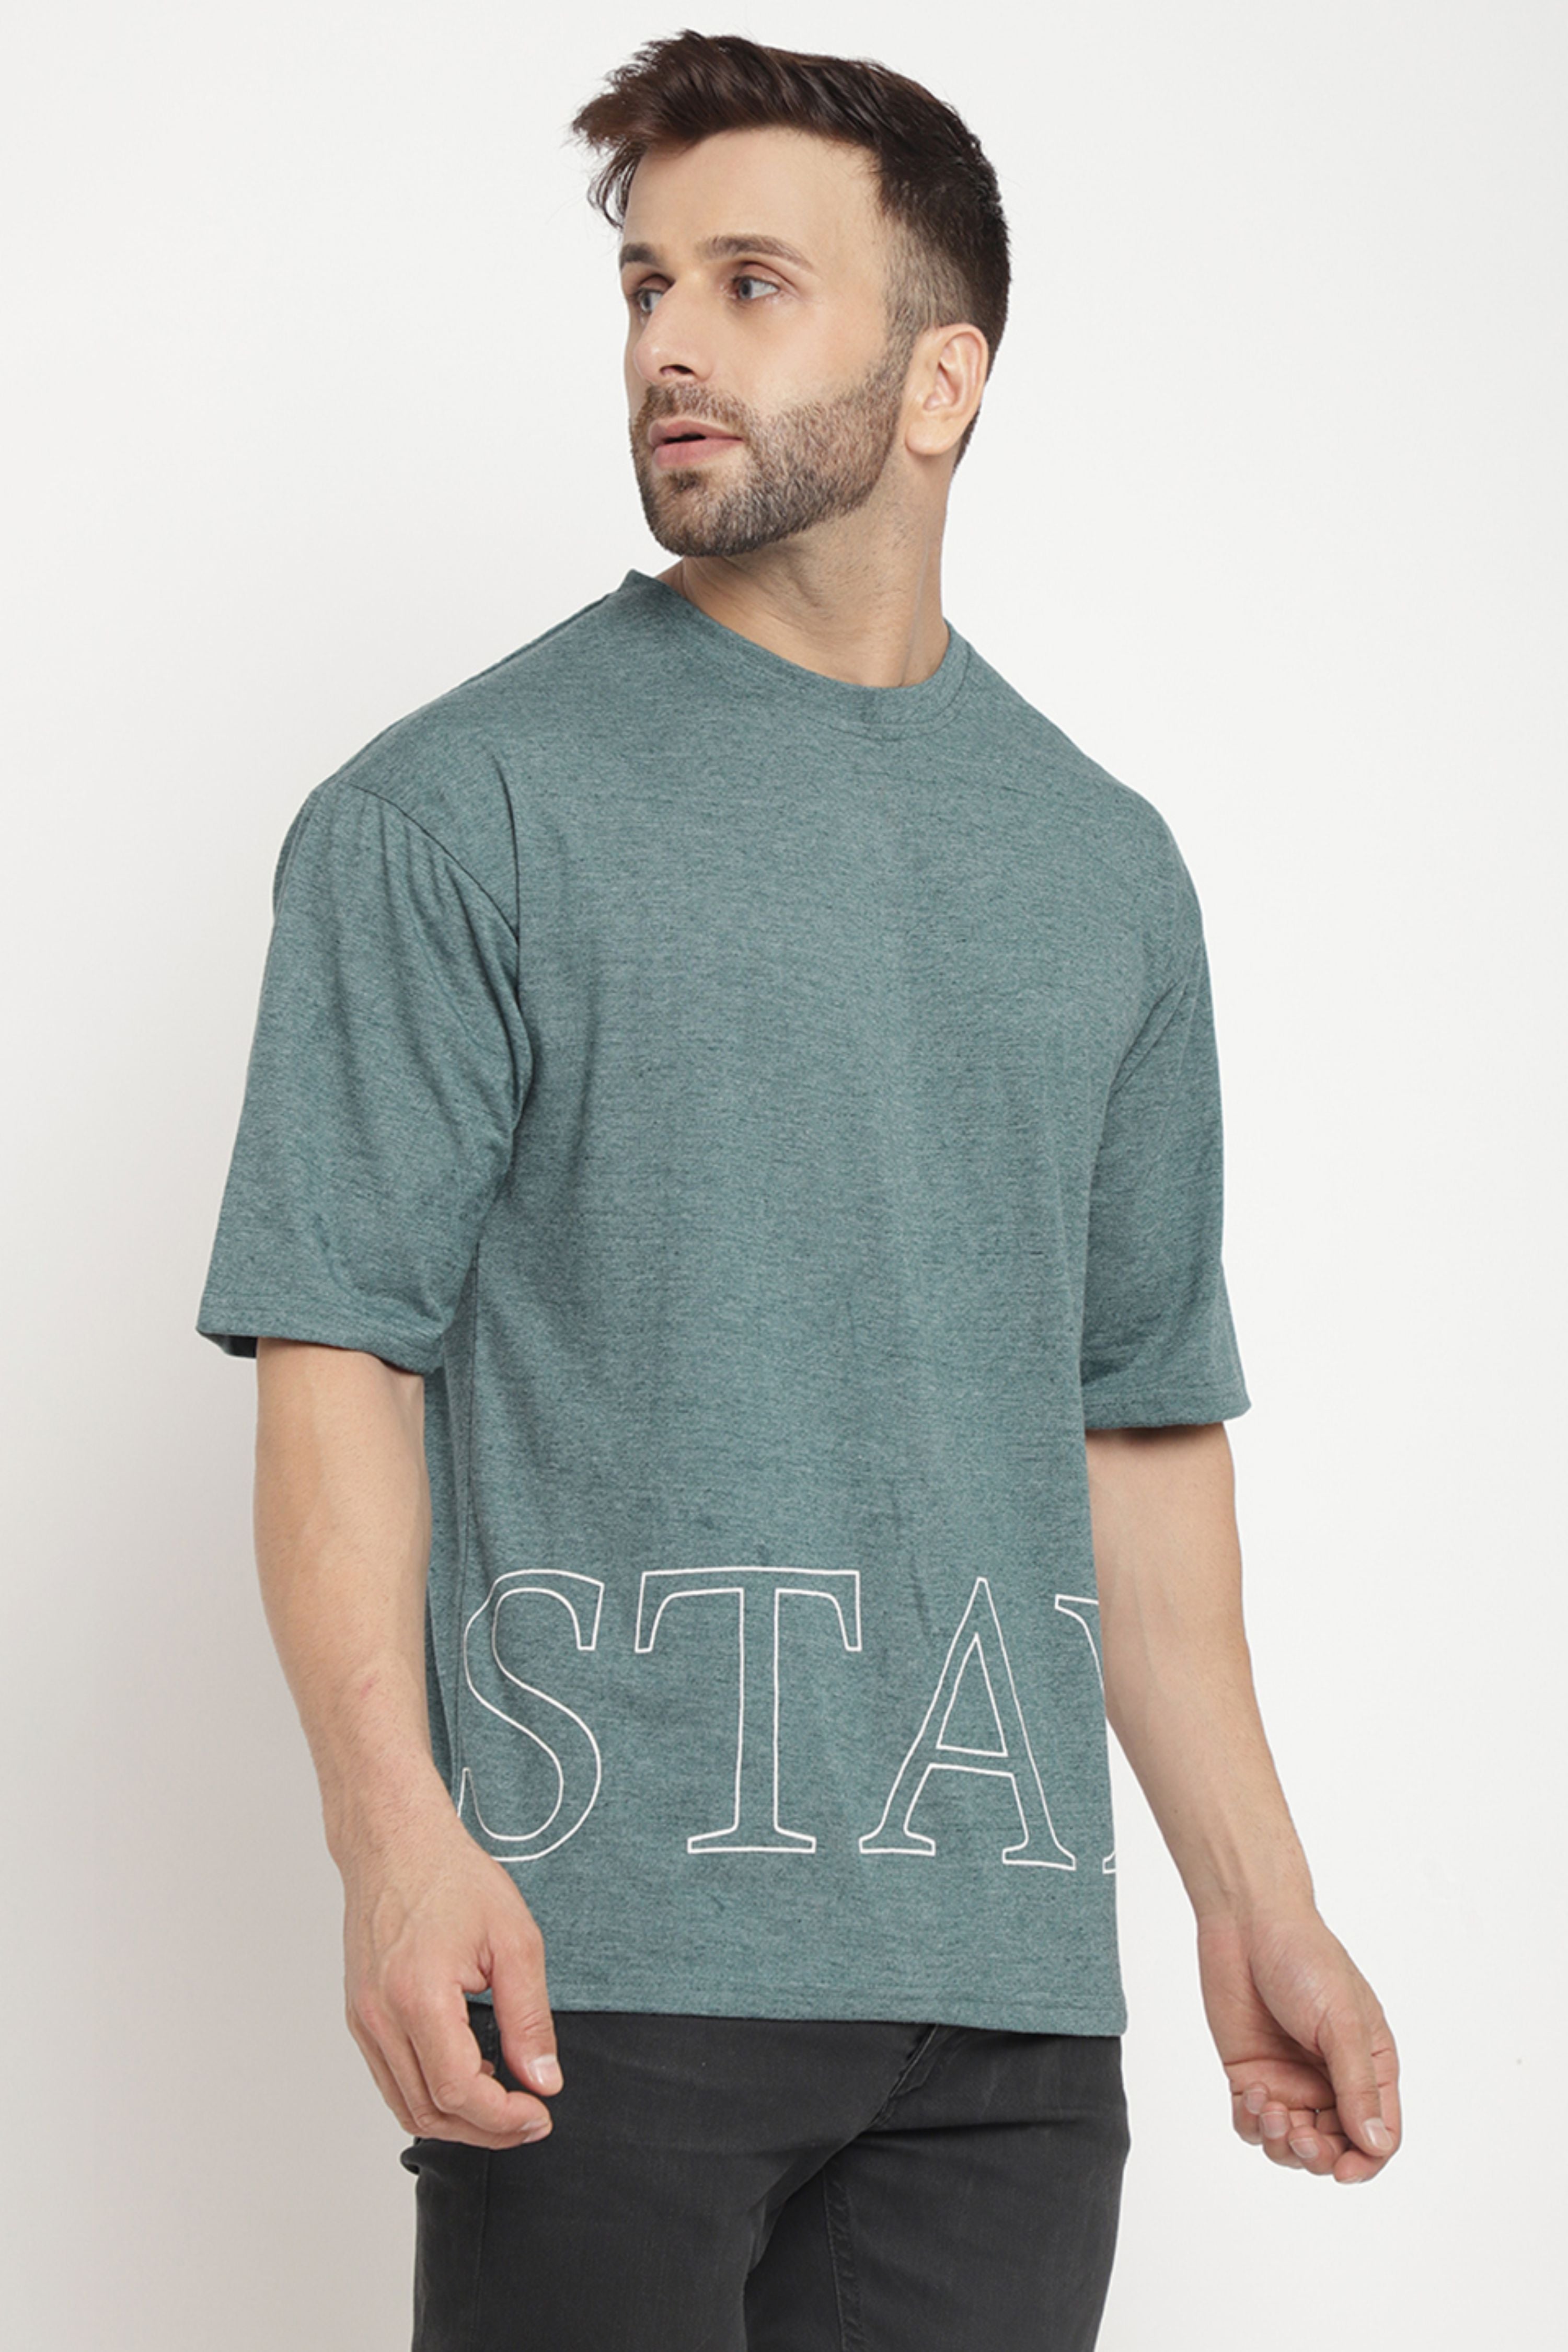 Oversized Green Melange "Stay" T-Shirt